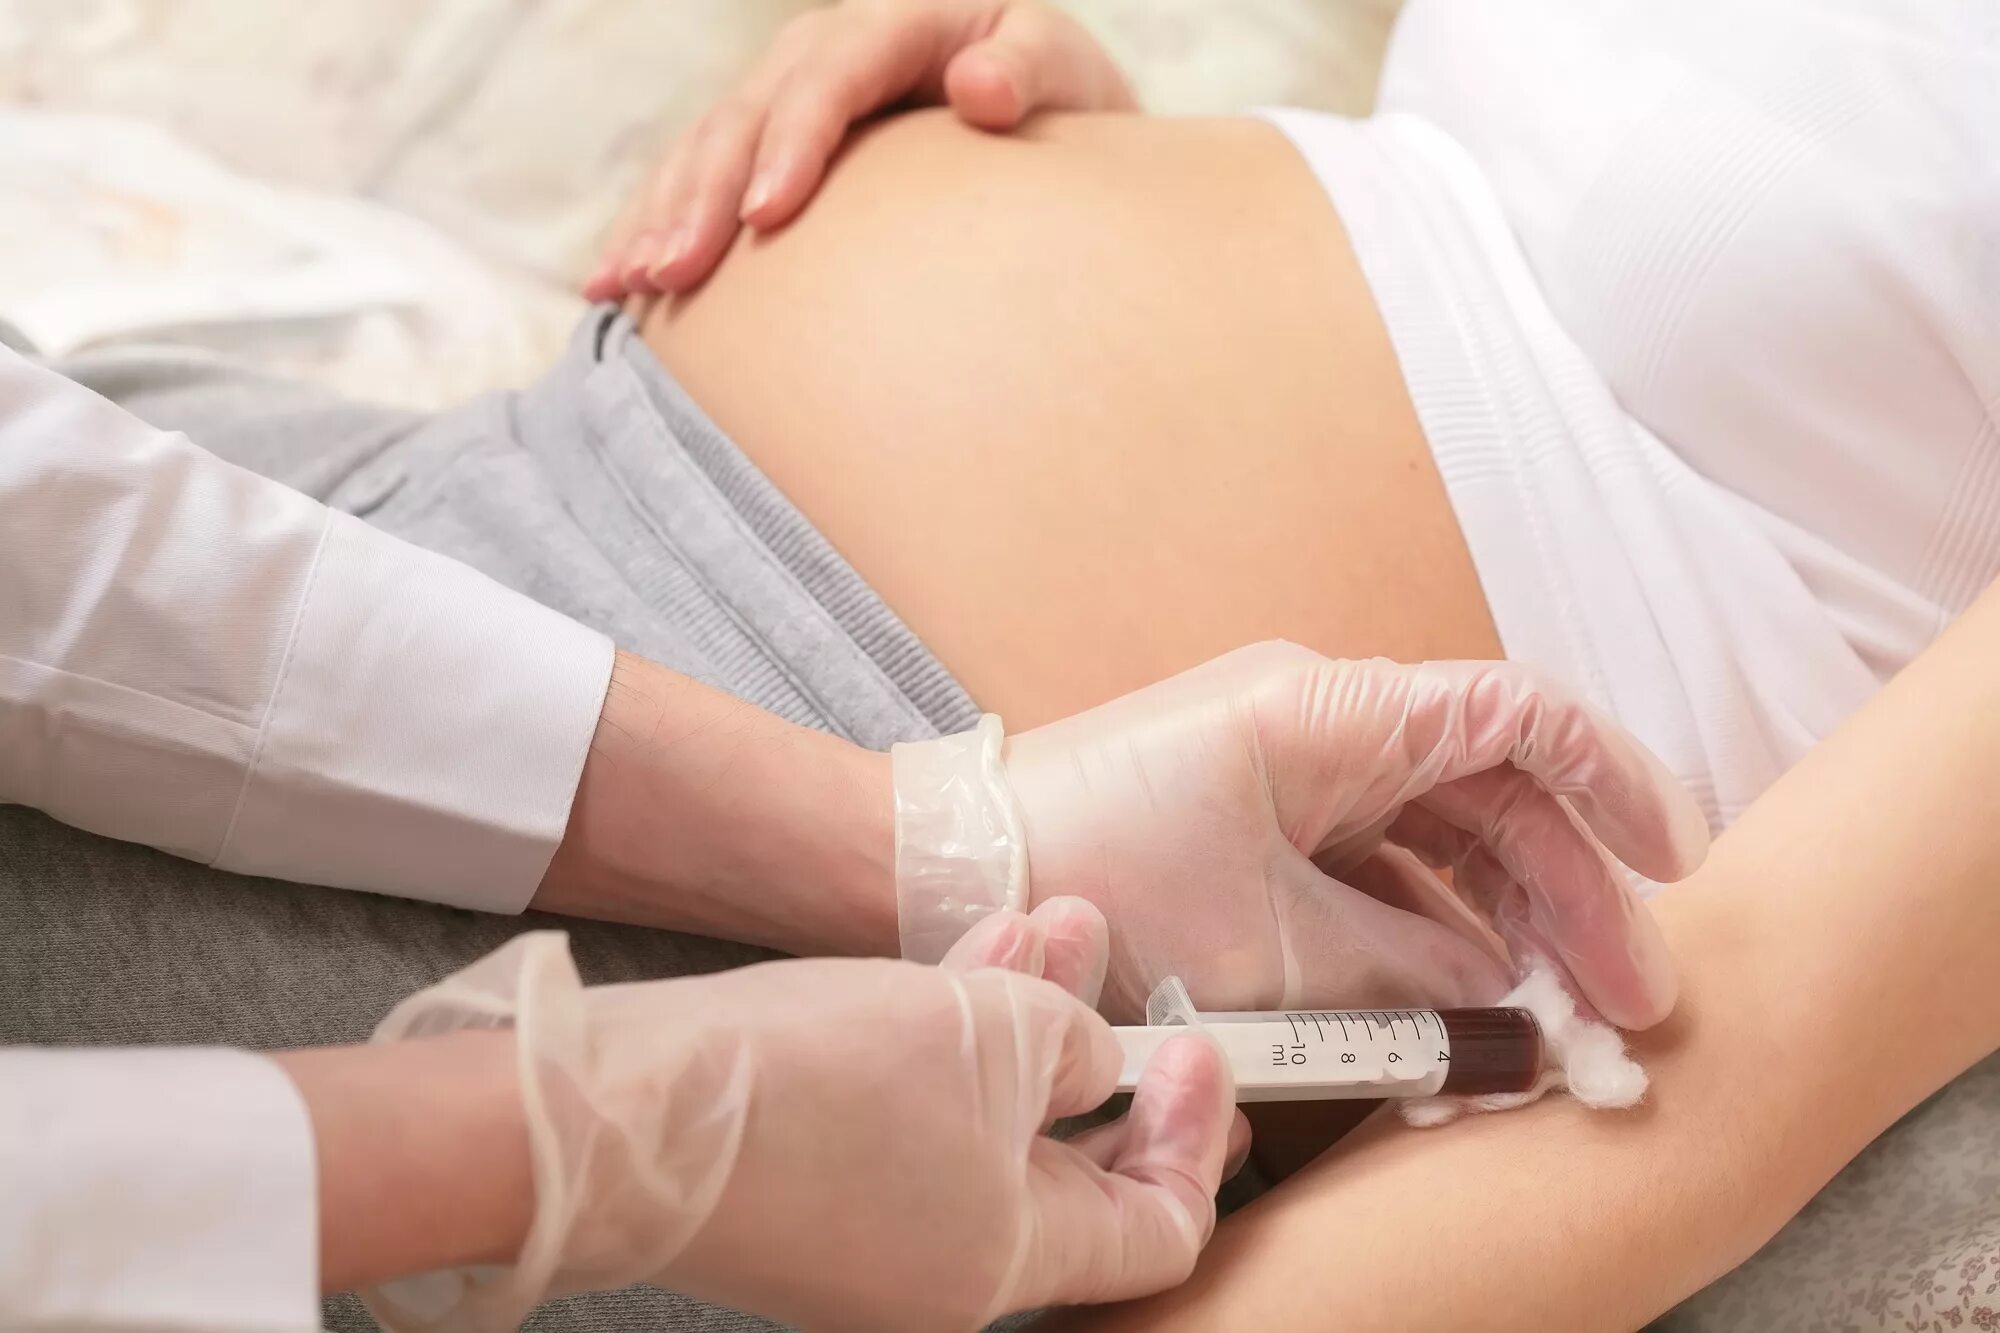 Тест по беременности и родам